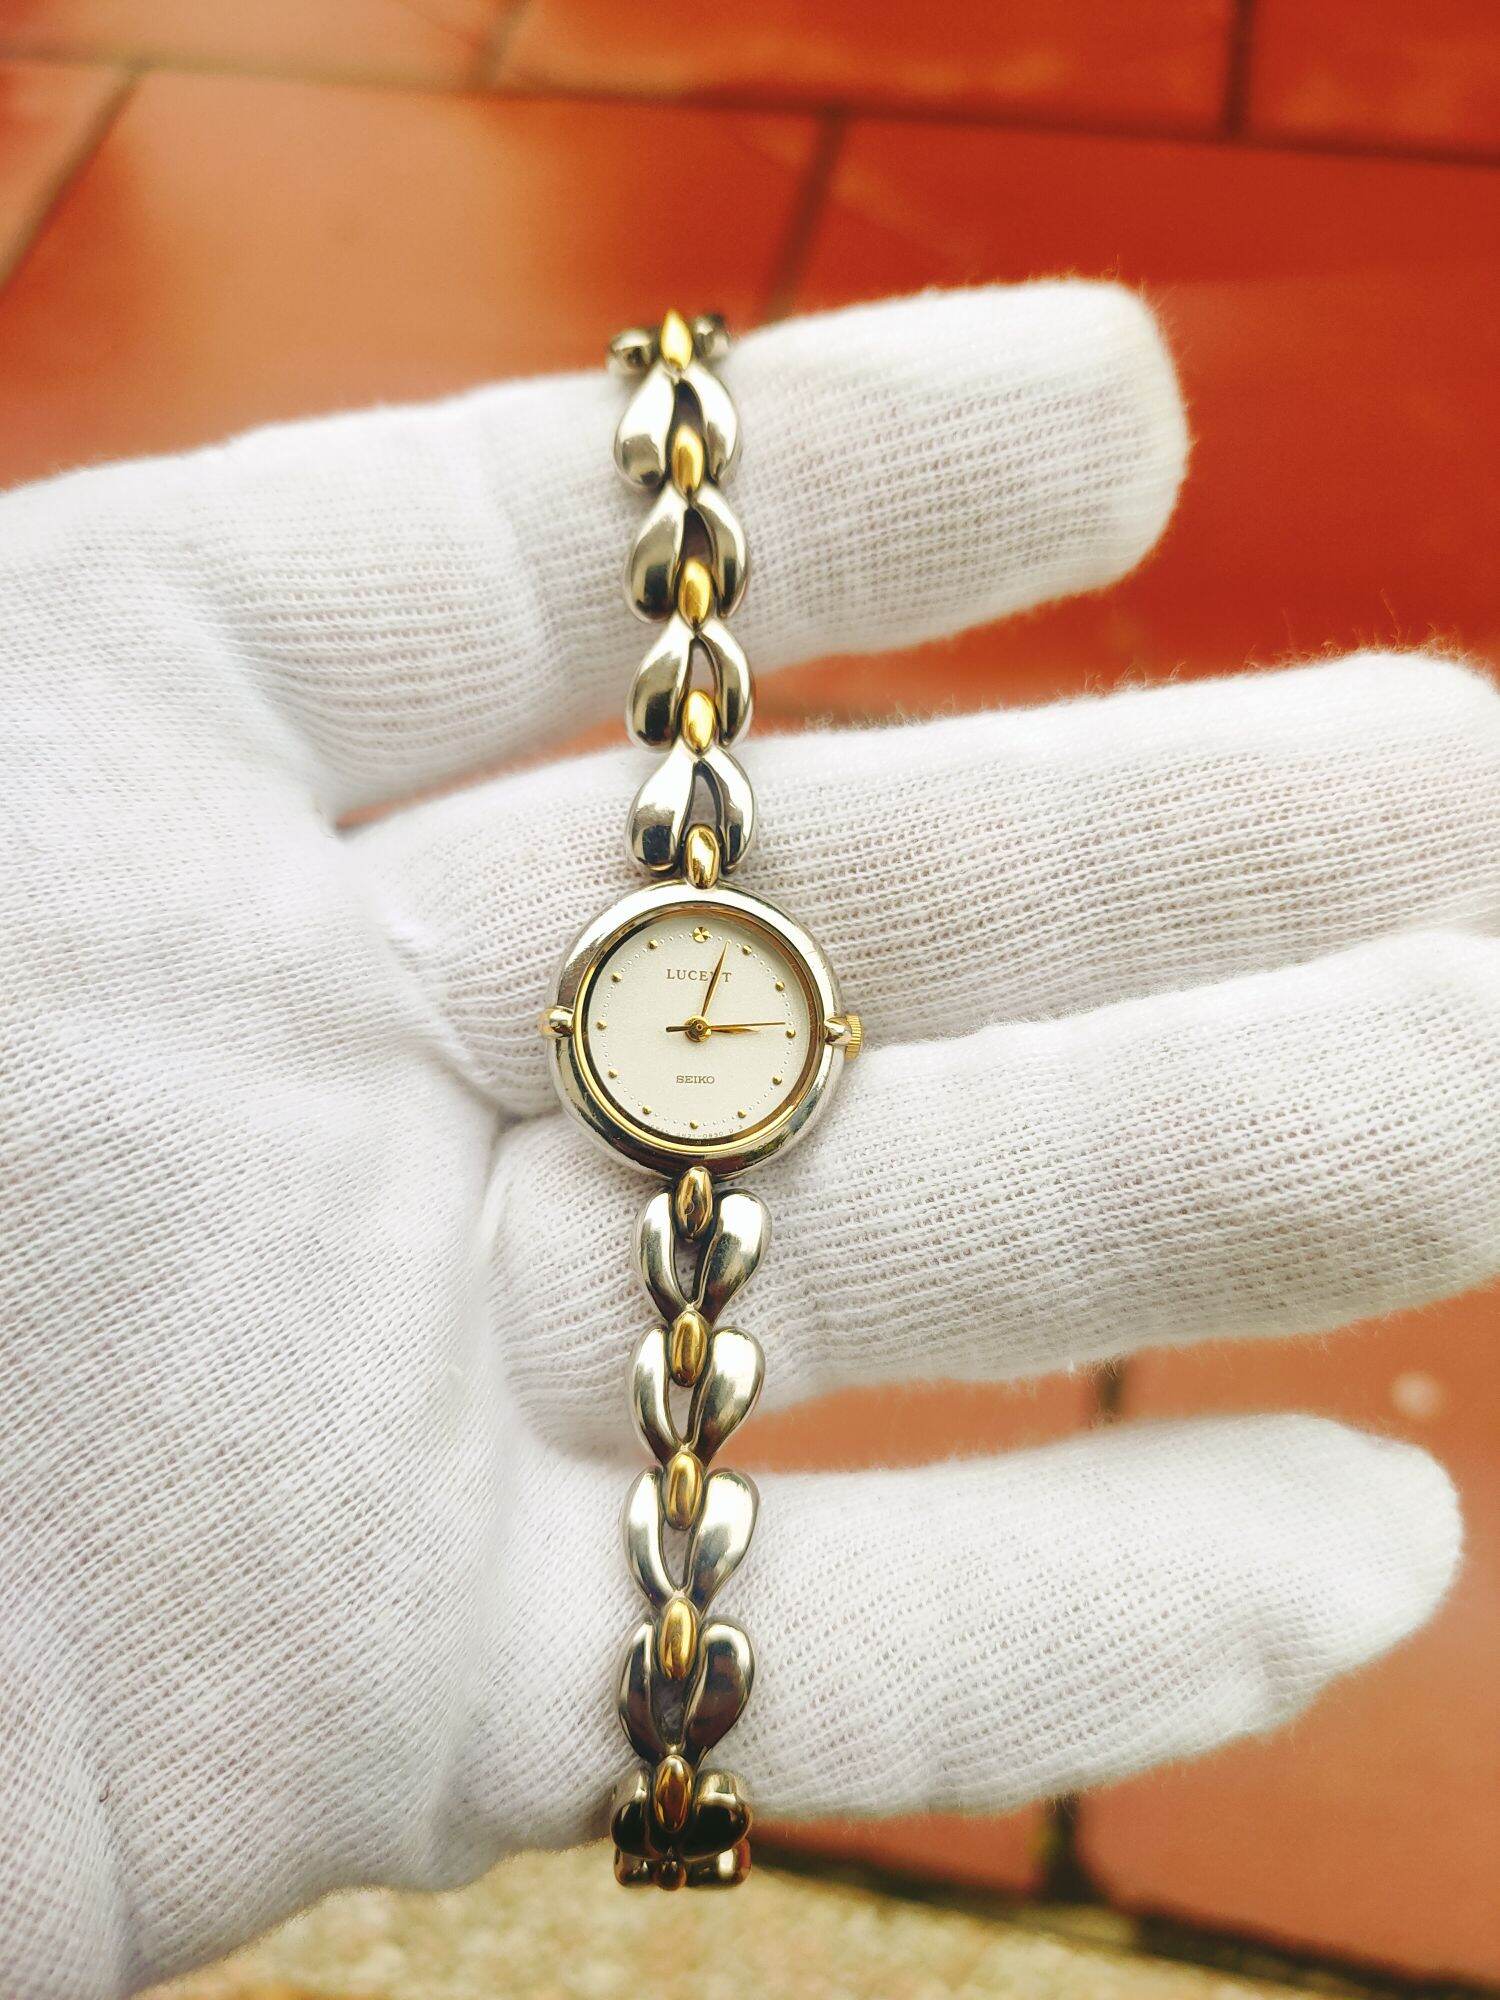 Đồng hồ nữ, thương hiệu seiko nhật bản, dạng lắc siêu đẹp, size 20mm thumbnail